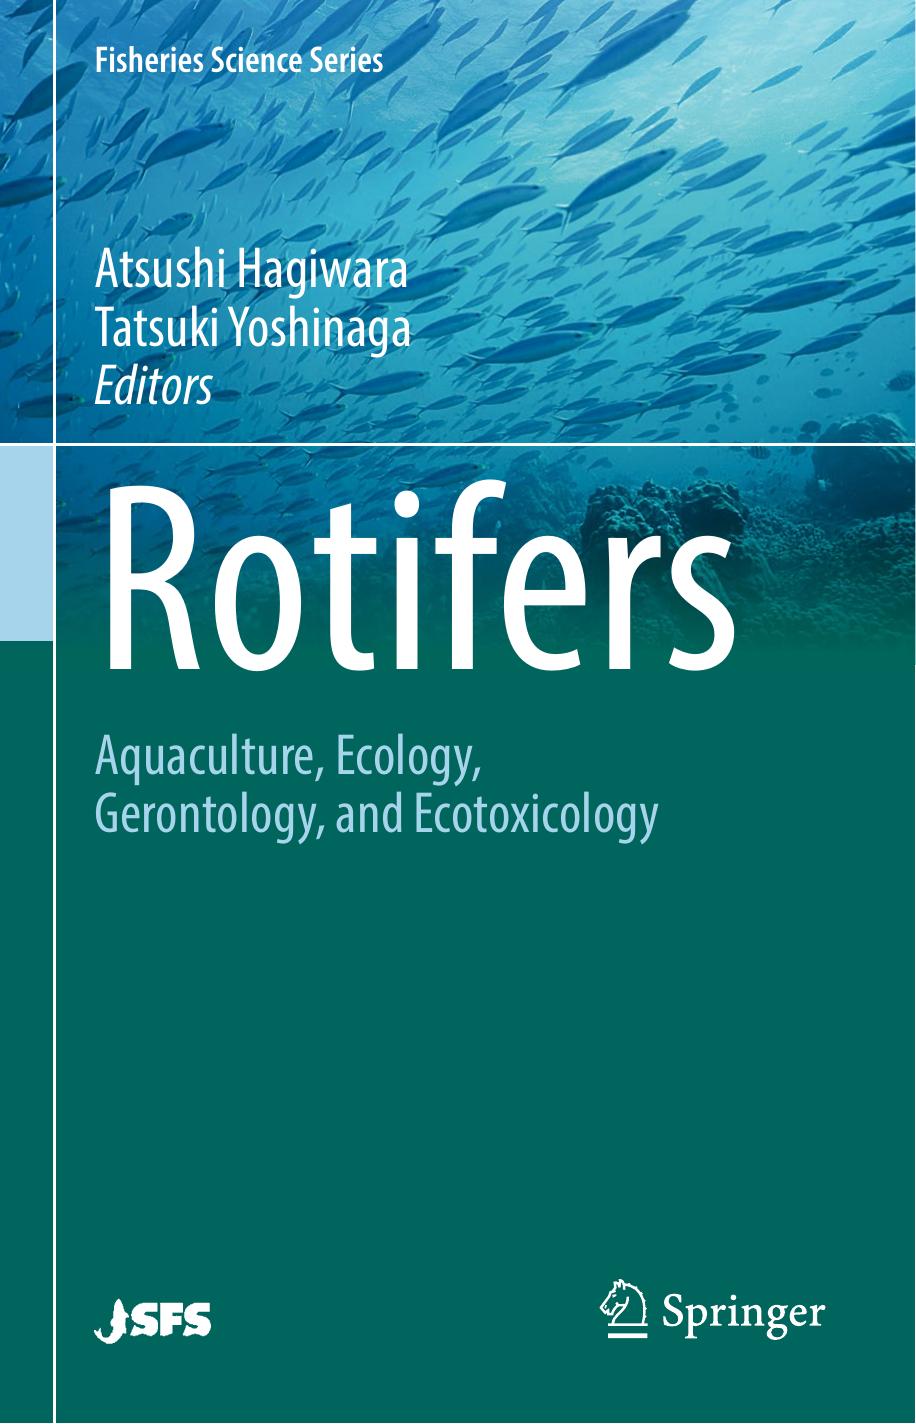 Rotifers  Aquaculture, Ecology, Gerontology, and Ecotoxicology-Springer Singapore (2017)